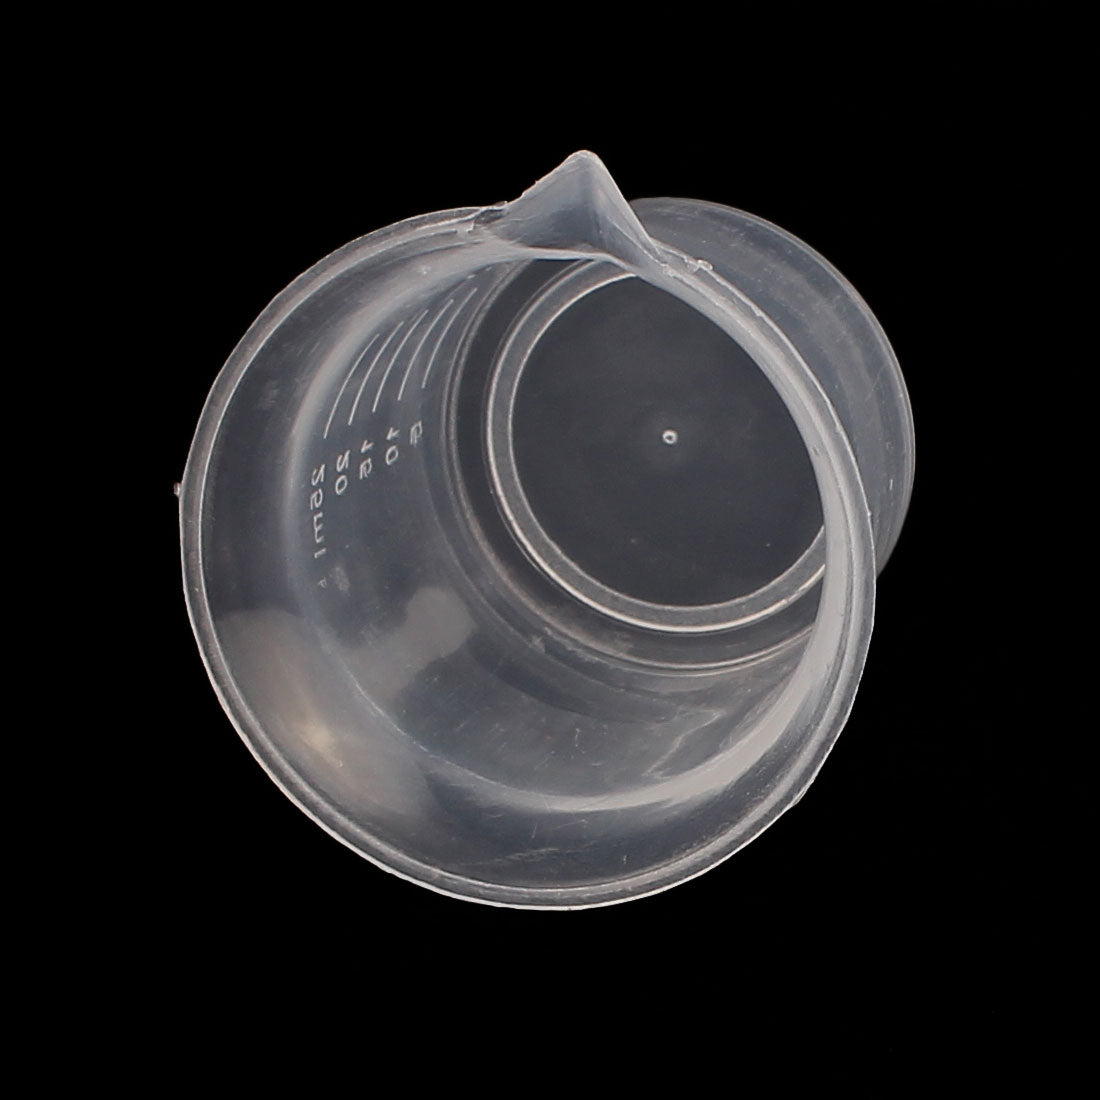 uxcell Uxcell Kitchen Lab 25mL Plastic Measuring Cup Jug Pour Spout Container 5 Pcs